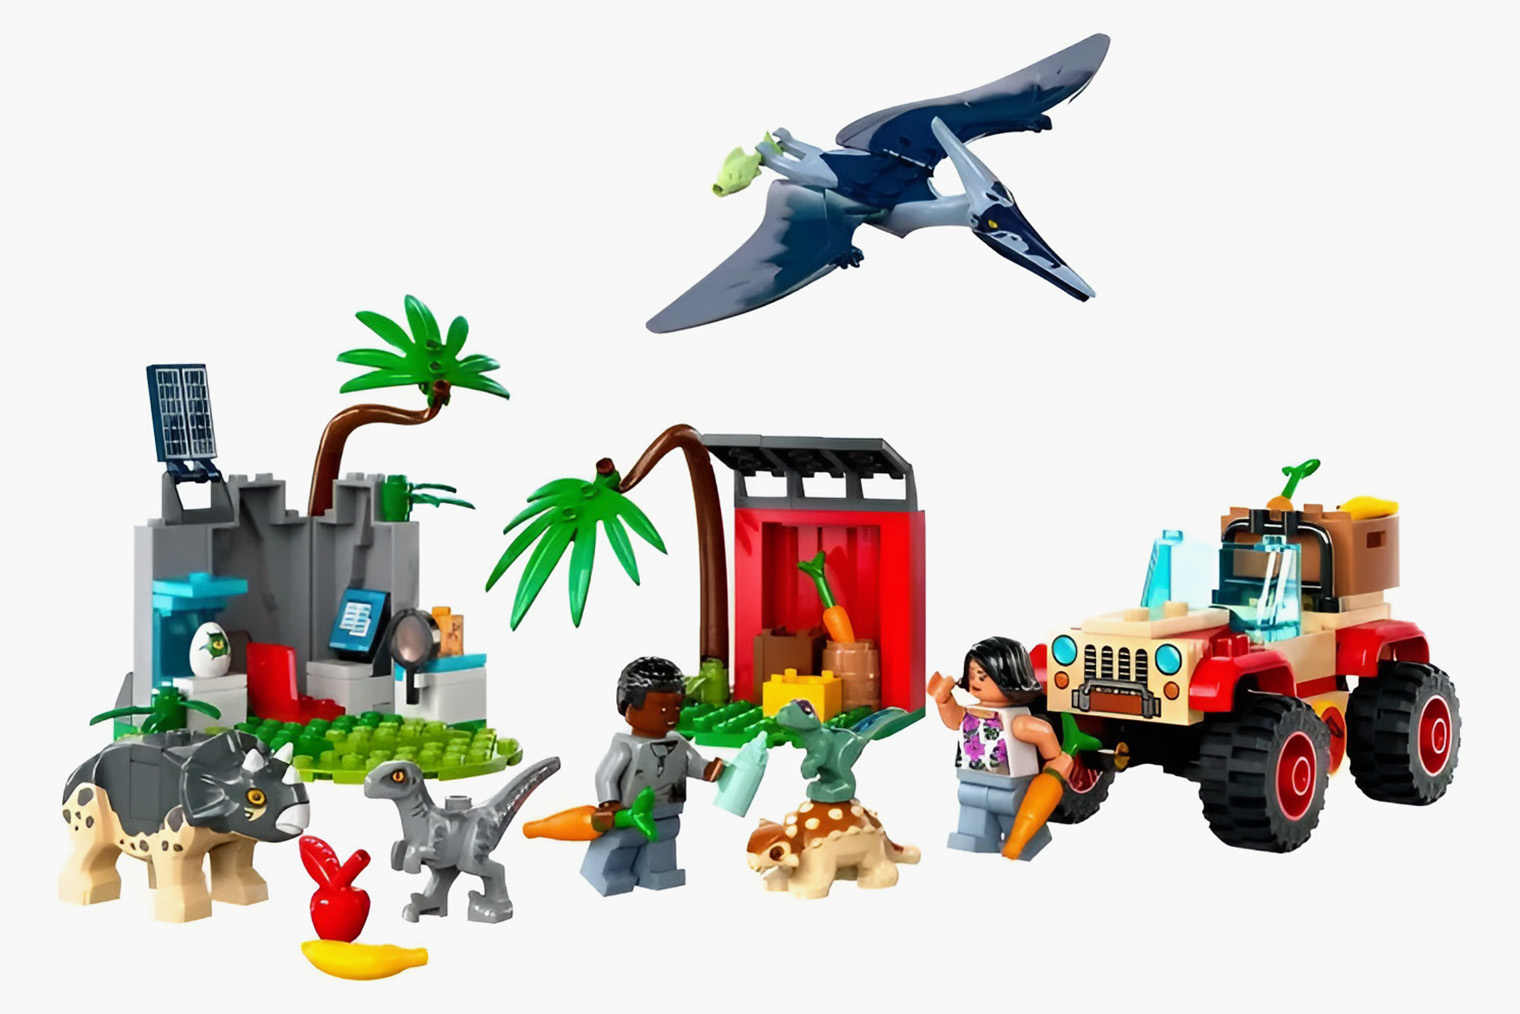 Легендарному «Лего» покорны все возрасты: сочетая различные наборы, можно переходить от простого к более сложному и создавать целые вселенные. Источник: ozon.ru